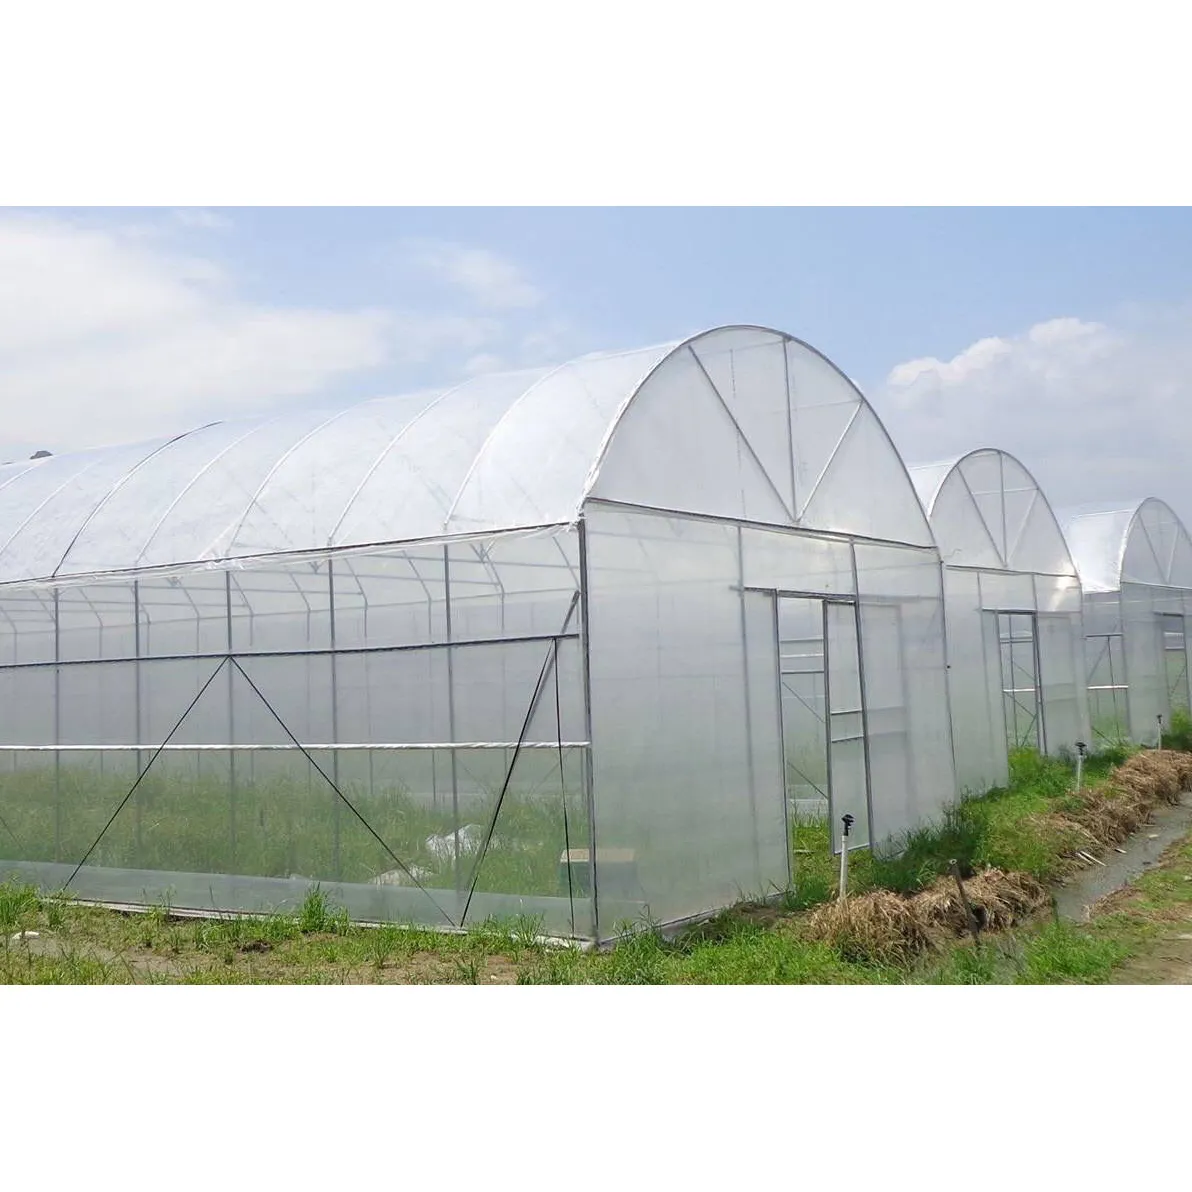 農業温室デザイン無料農業屋内大経済トンネルプラスチック温室野菜用